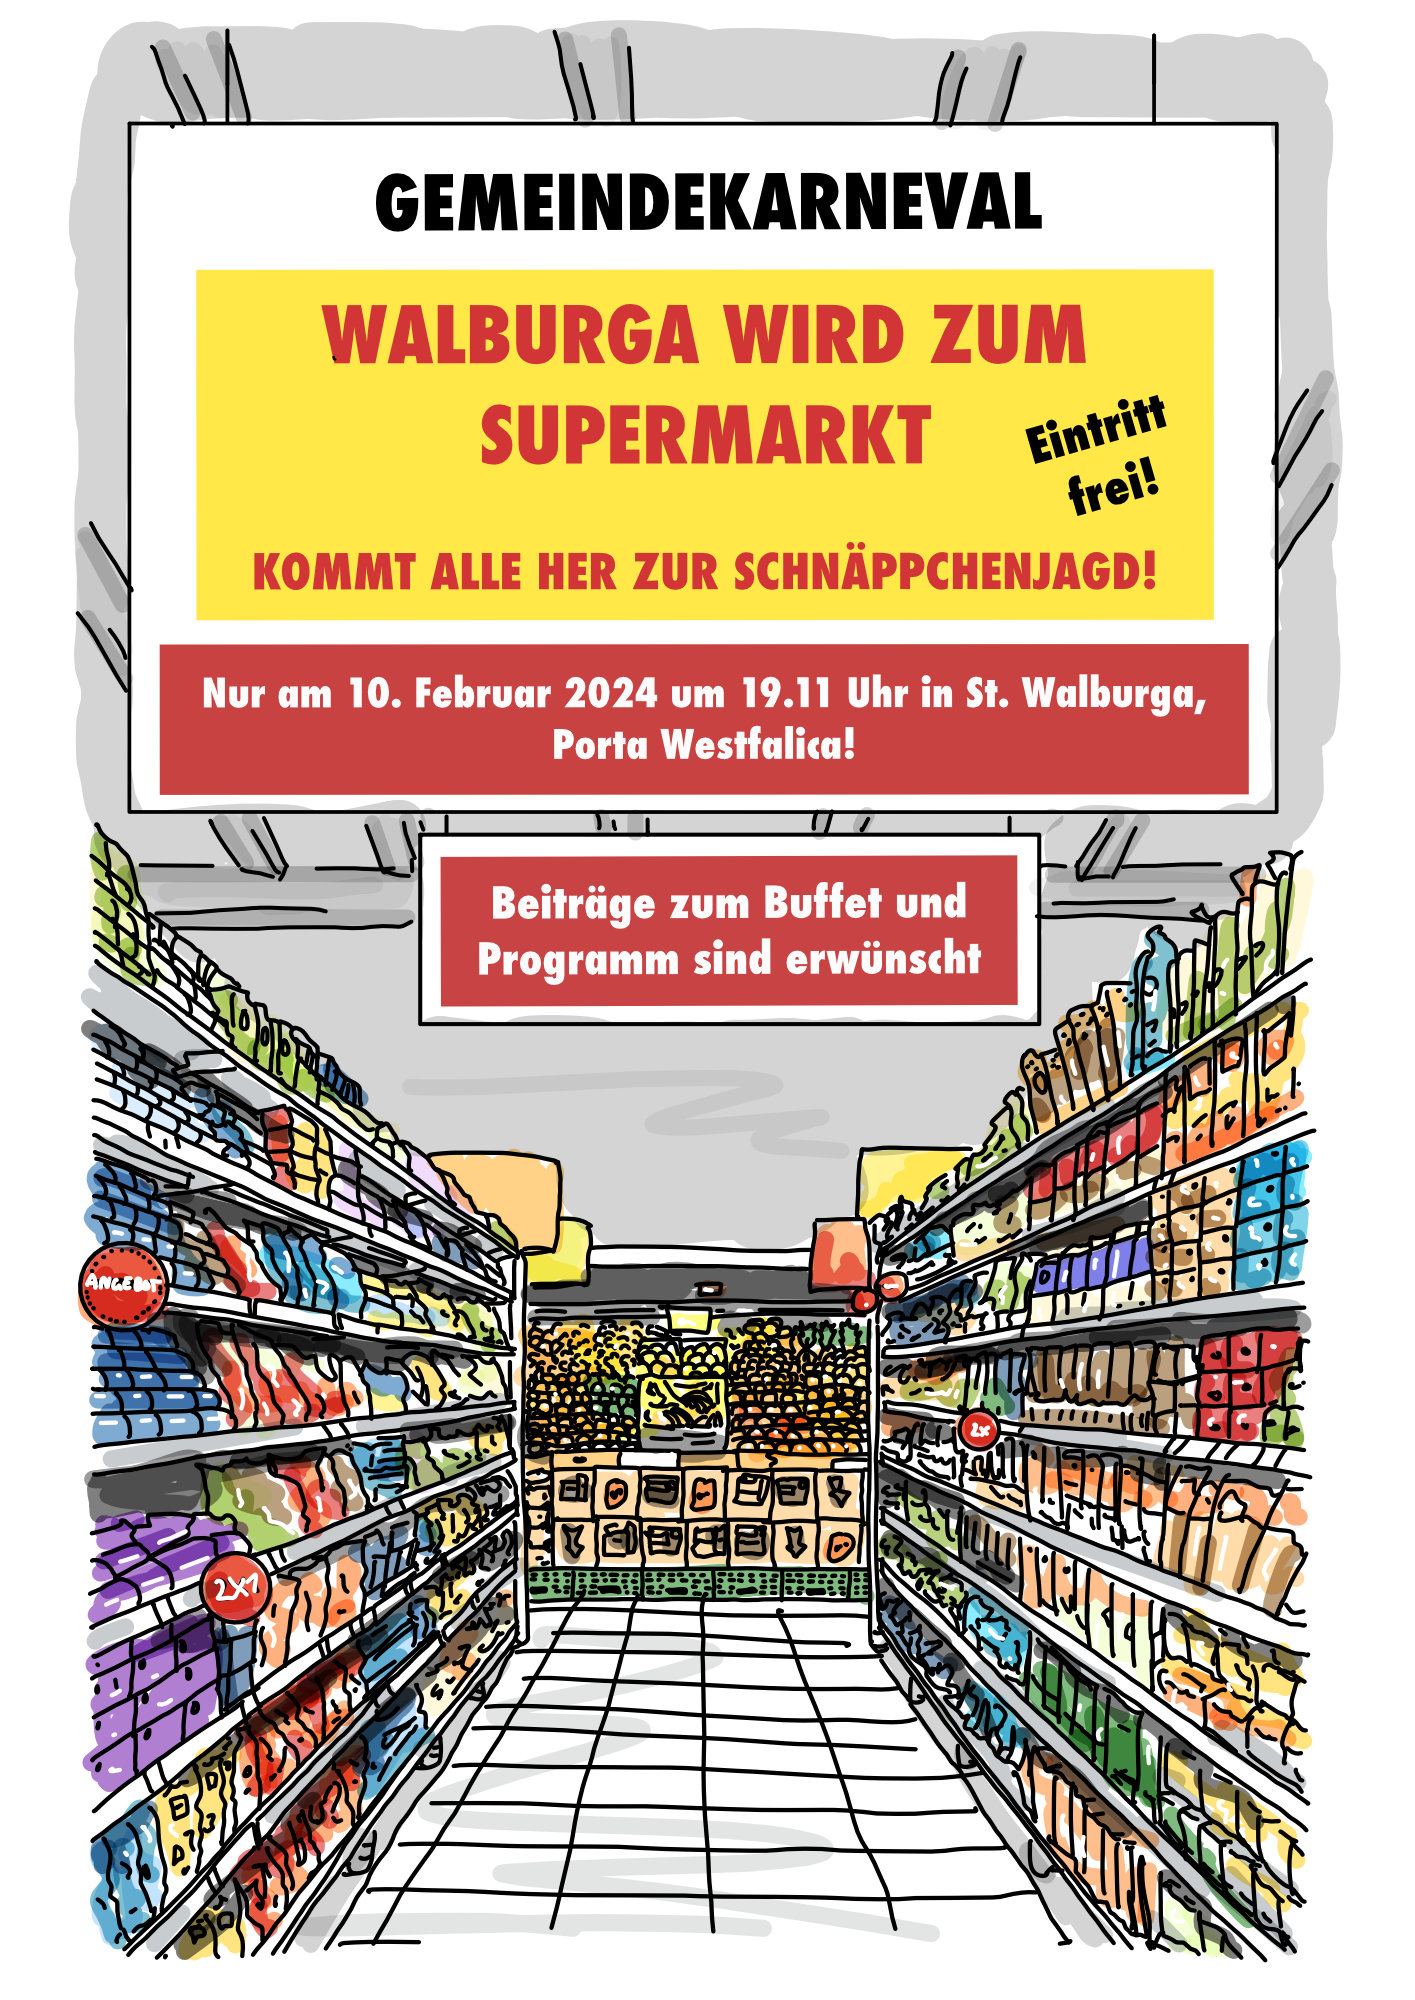 Gemeindekarneval - "Walburga wird zum Supermarkt"